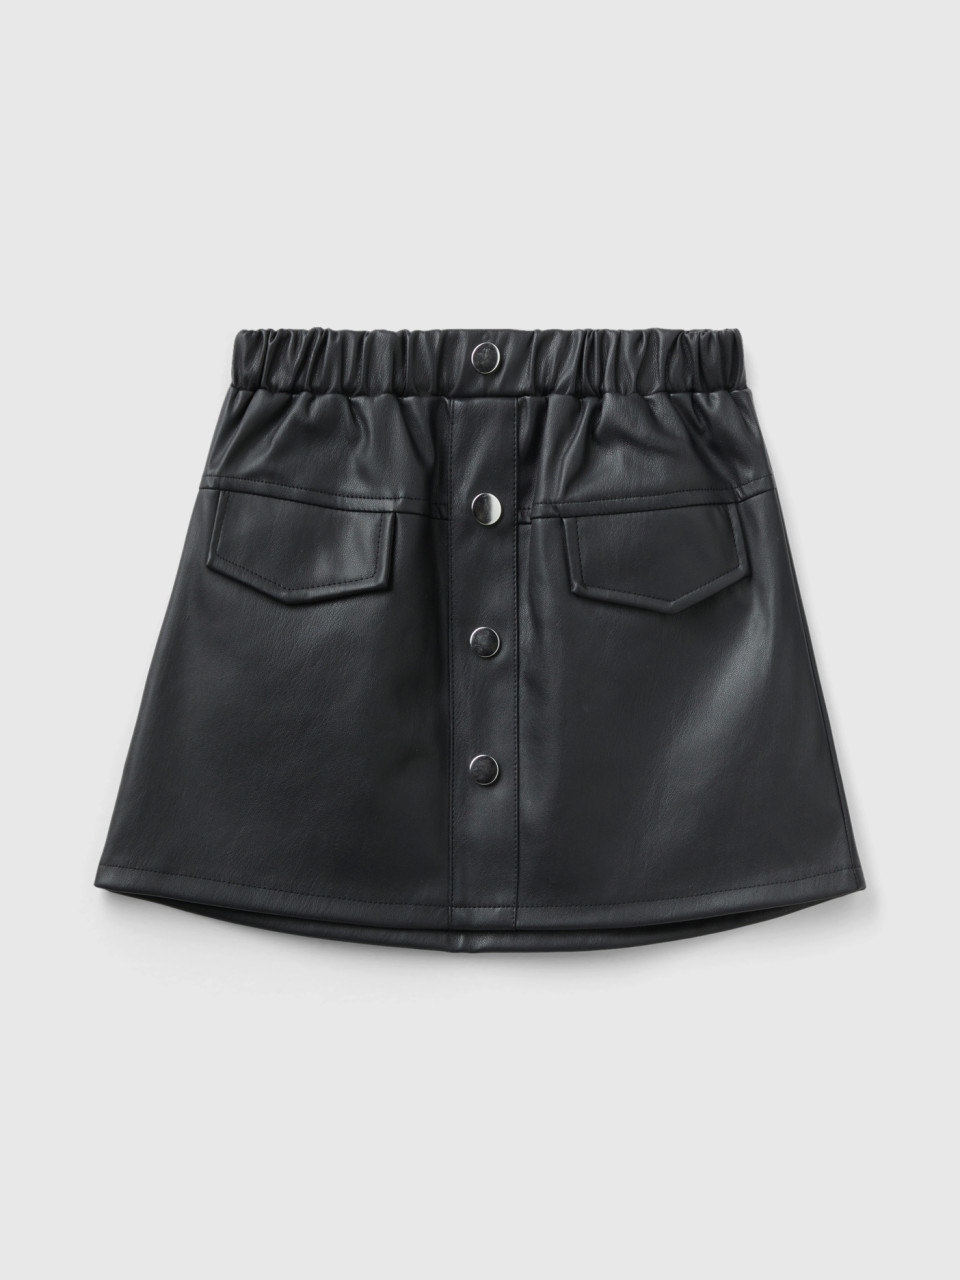 Benetton, Miniskirt In Imitation Leather, Black, Kids